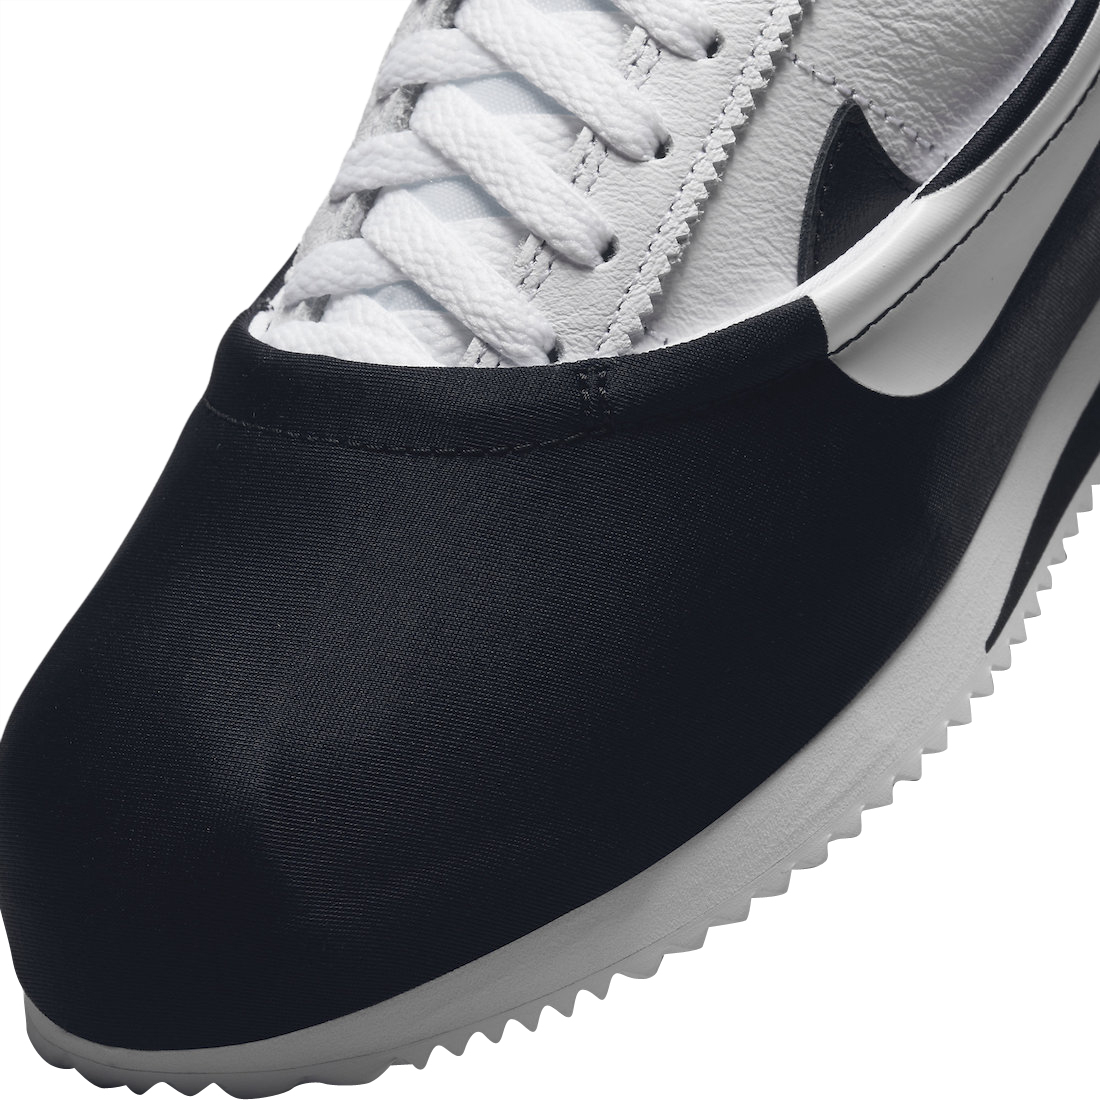 CLOT x Nike Cortez Clotez White Black DZ3239-002 - KicksOnFire.com